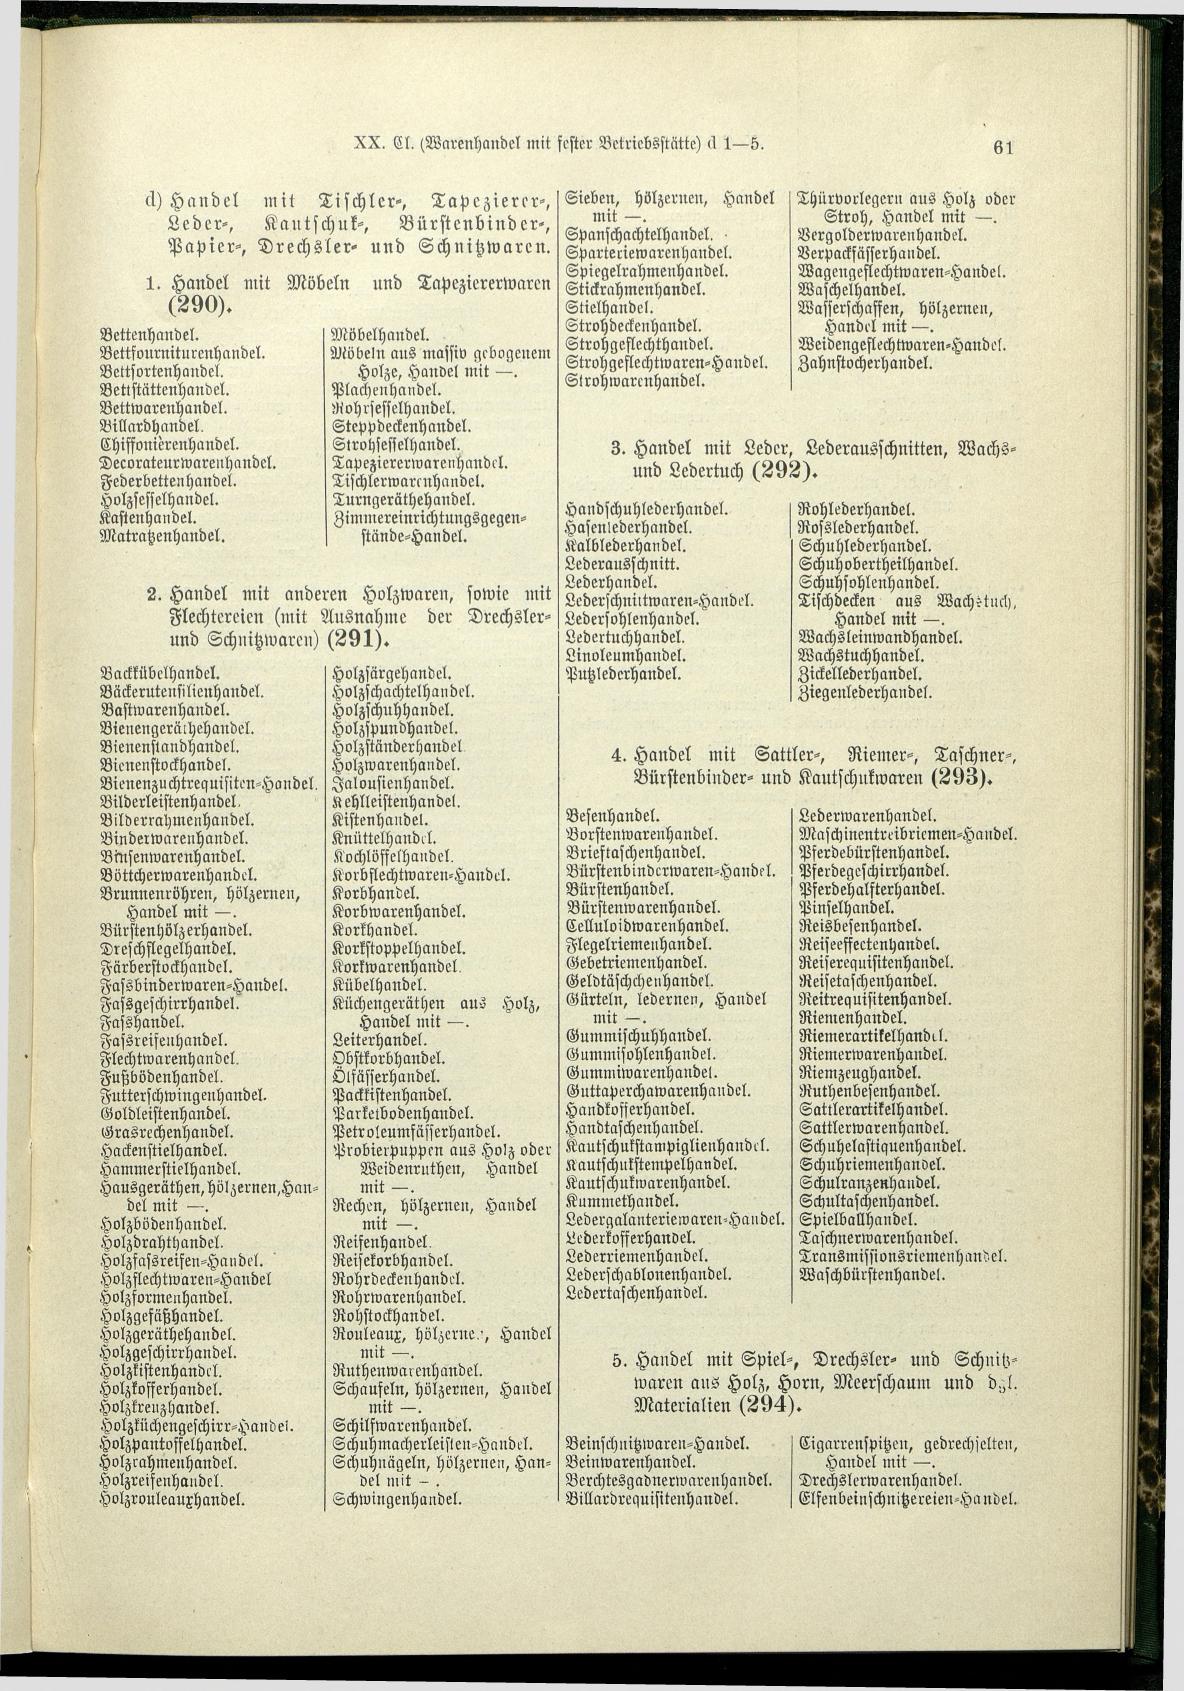 Verzeichnis der Gewerbe der im Reichsrathe vertretenen Königreiche und Länder 1900 - Page 65